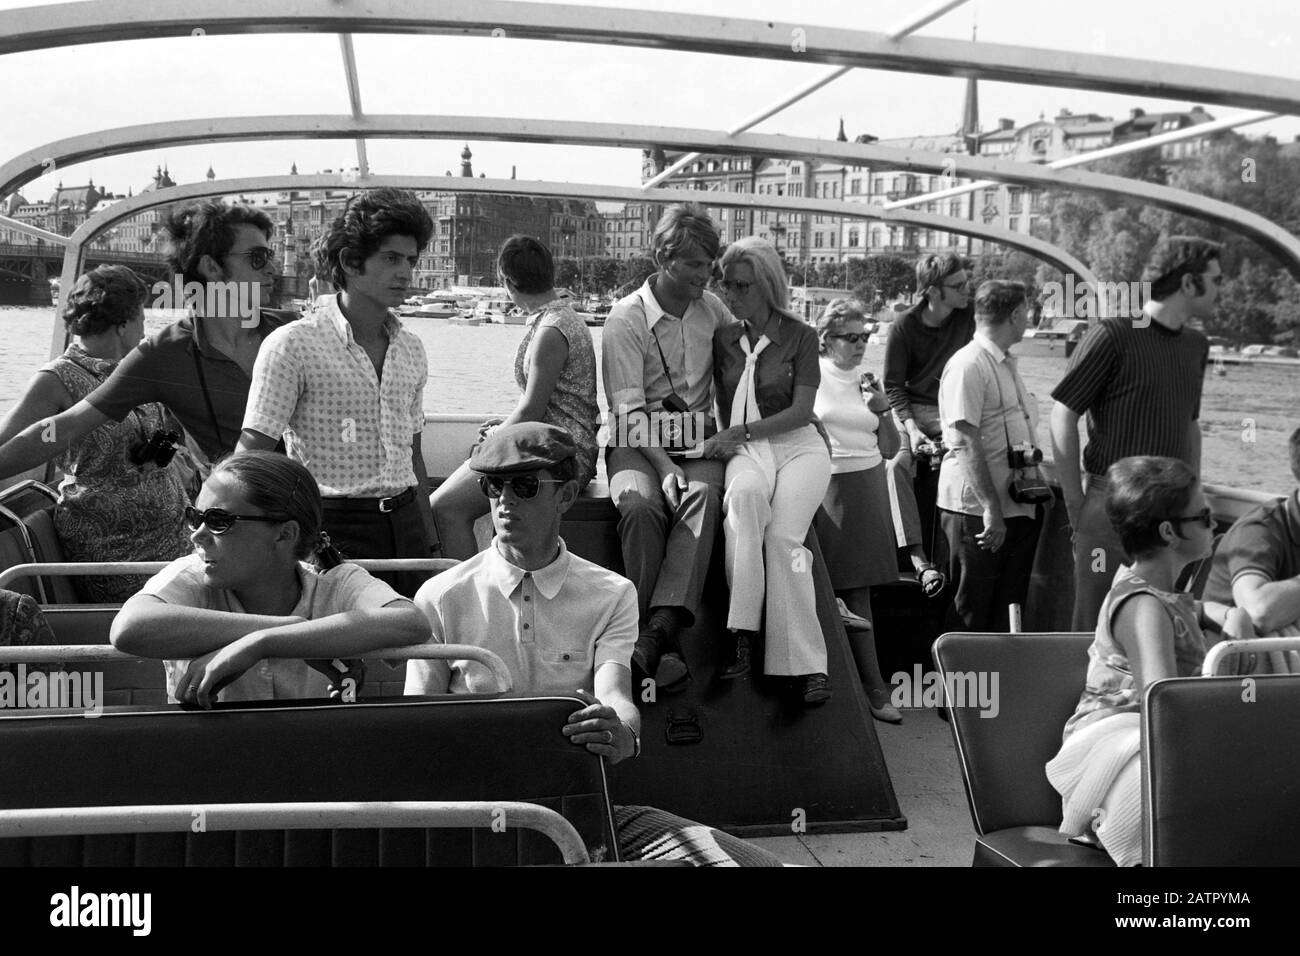 Touristen an Deck einer Hafenfahrt, Stoccolma, Schweden, 1969. Turisti sul ponte di una crociera del porto, Stoccolma, Svezia, 1969. Foto Stock